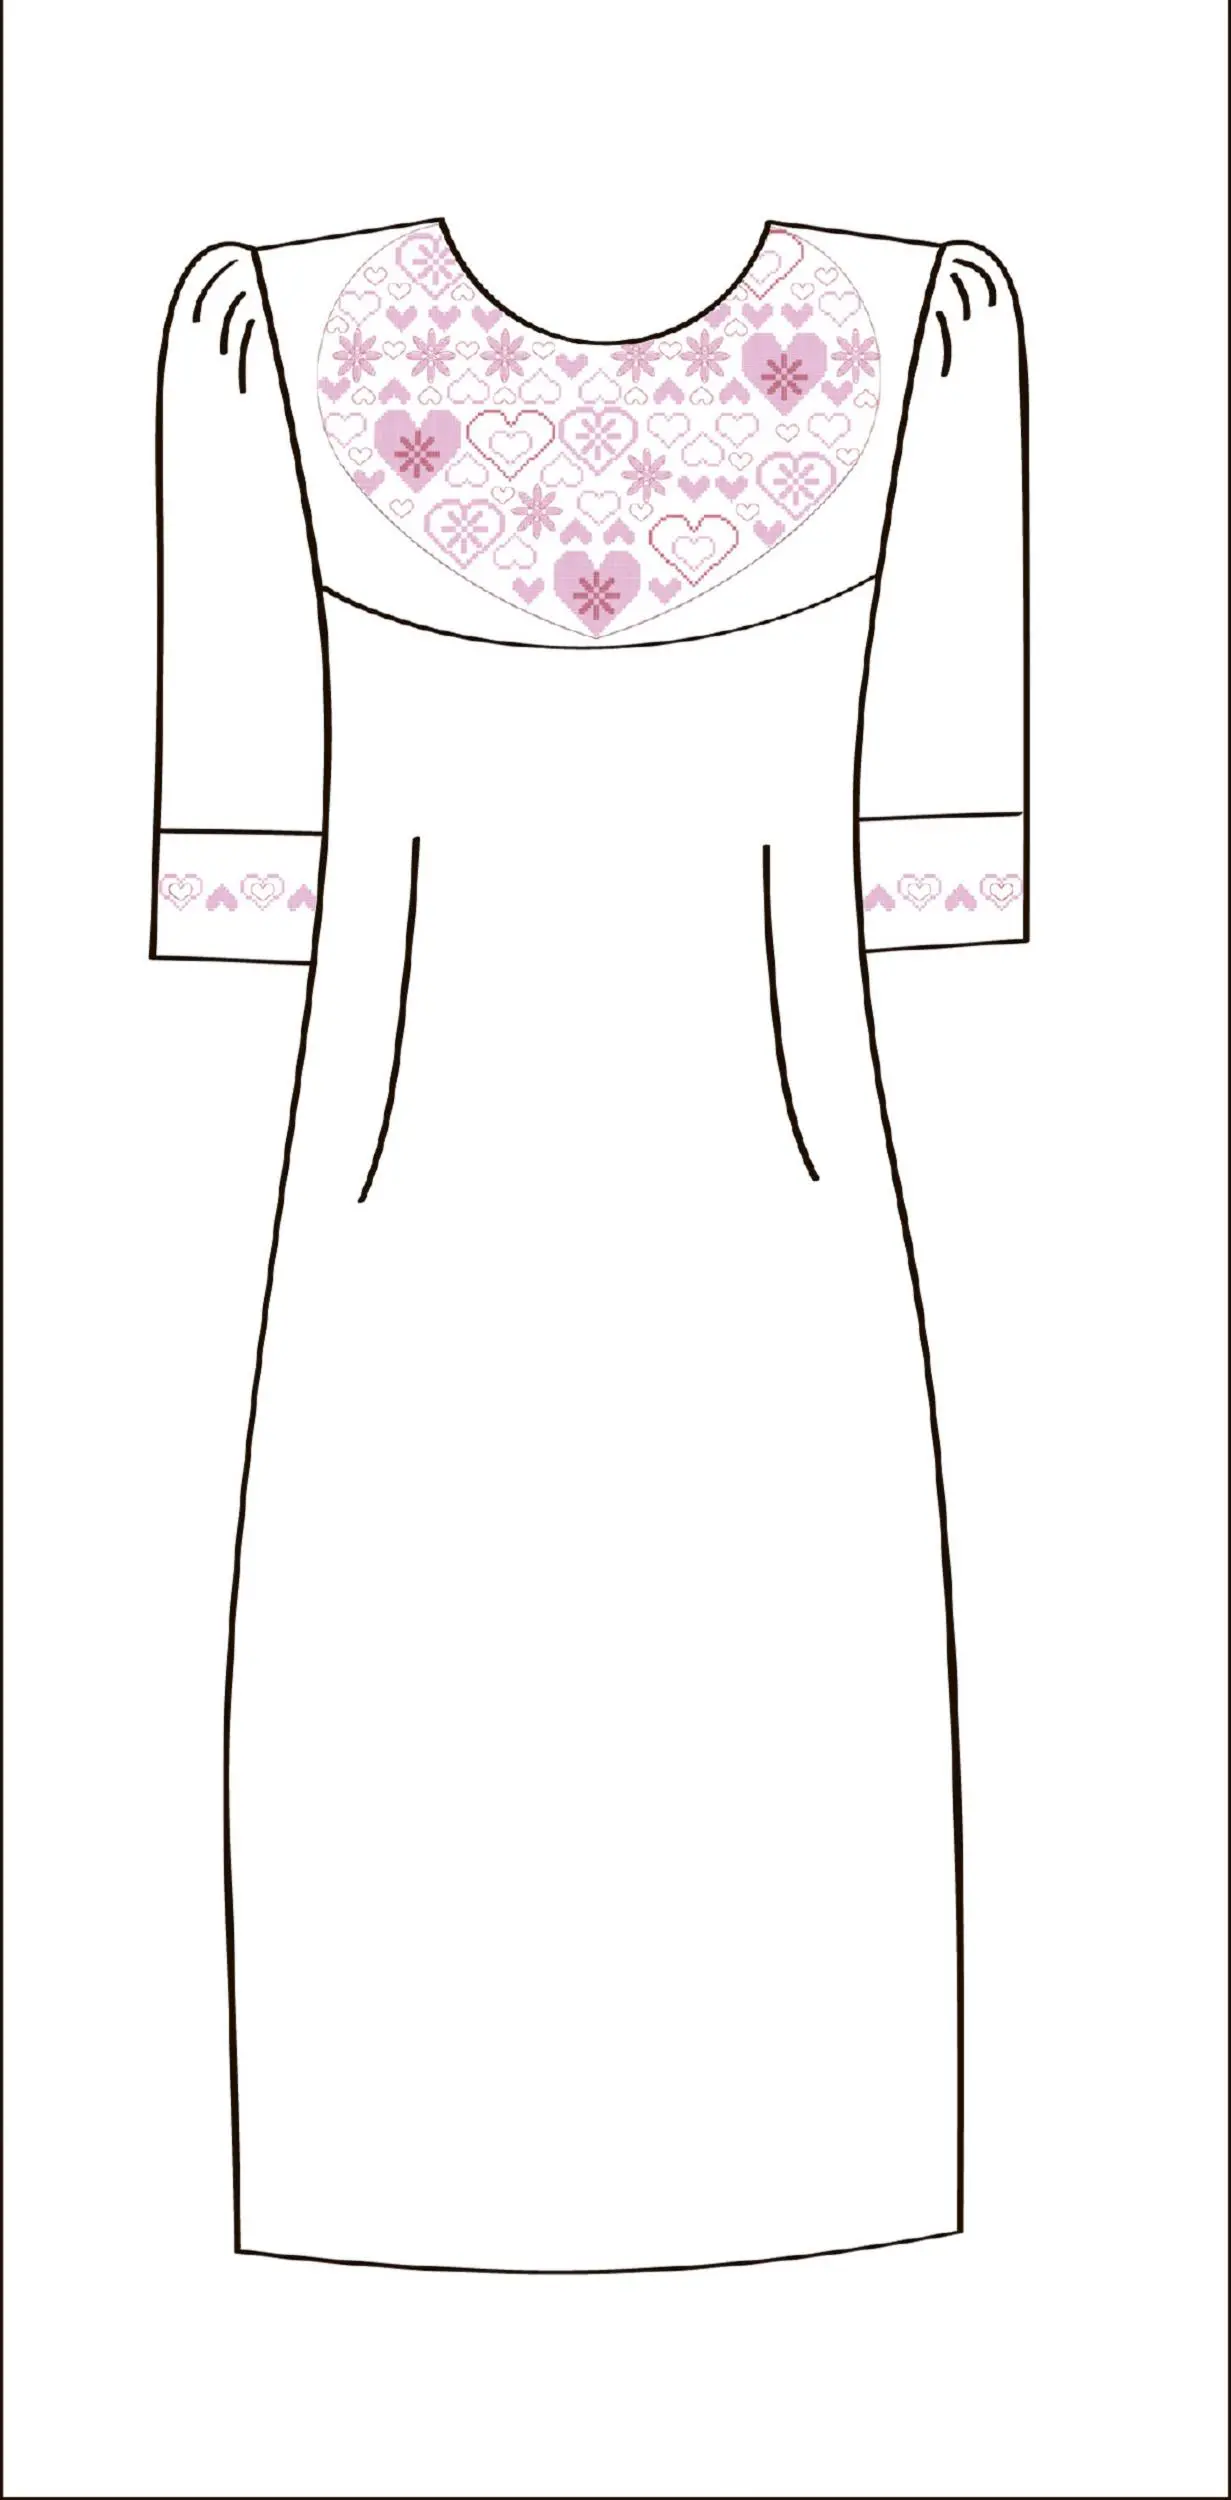 822-14/09 Плаття жіноче, біле, розмір 40